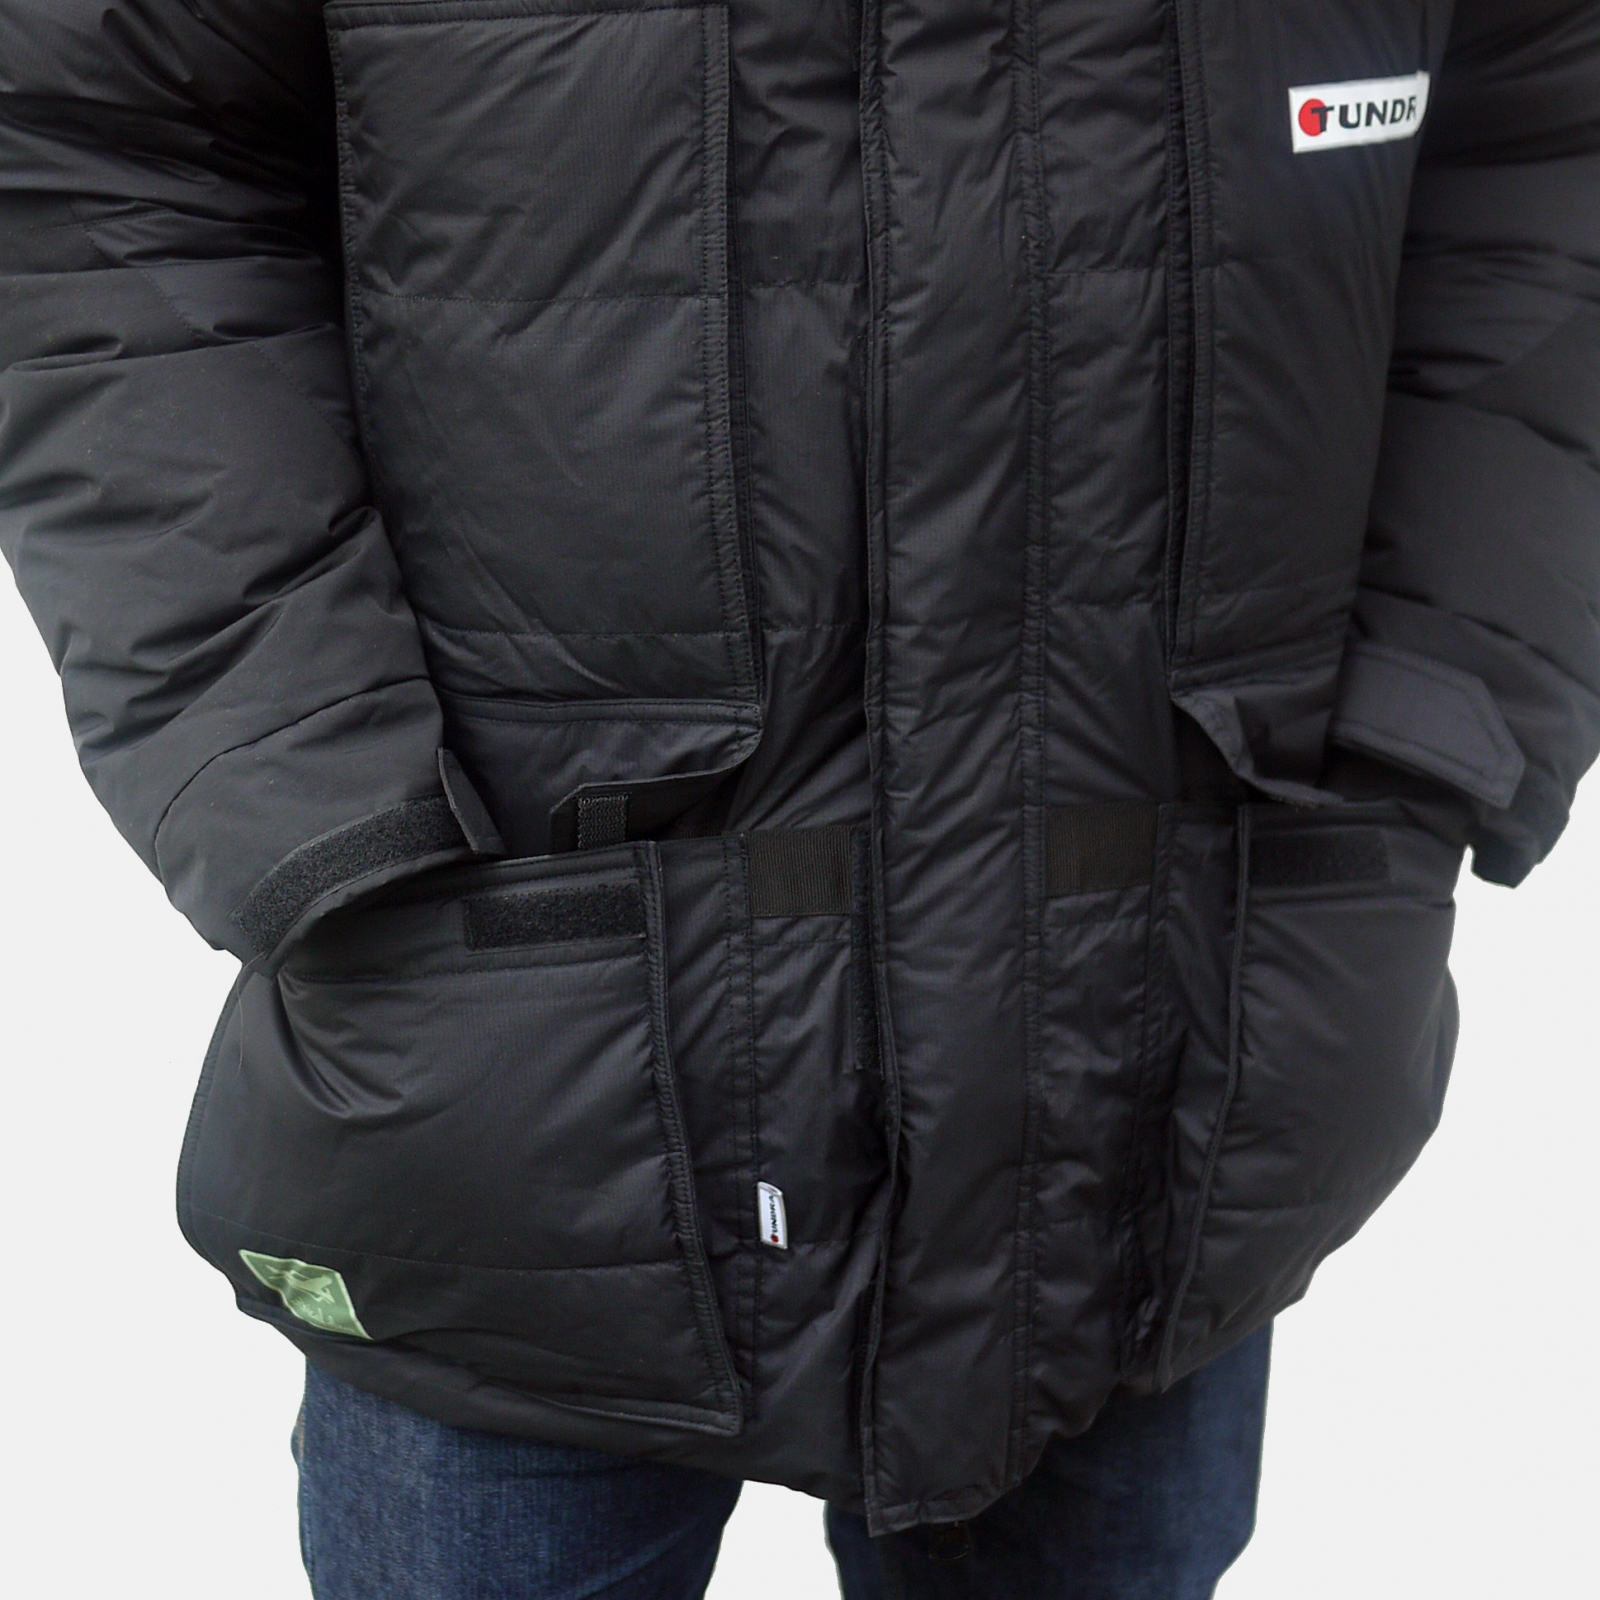 Arctic Jacket - Tundra Ethical Sleeping Bags